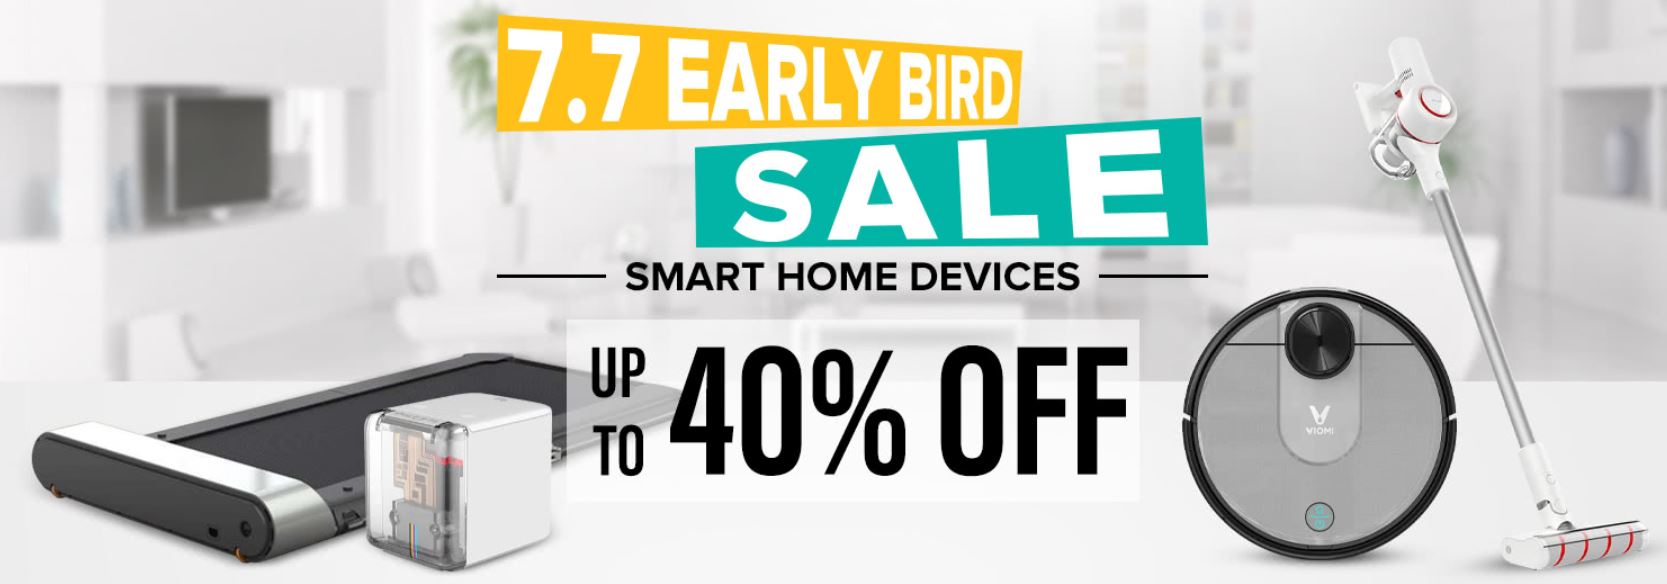 Wyprzedaż urządzeń Smart Home w geekbuying.com - early bird